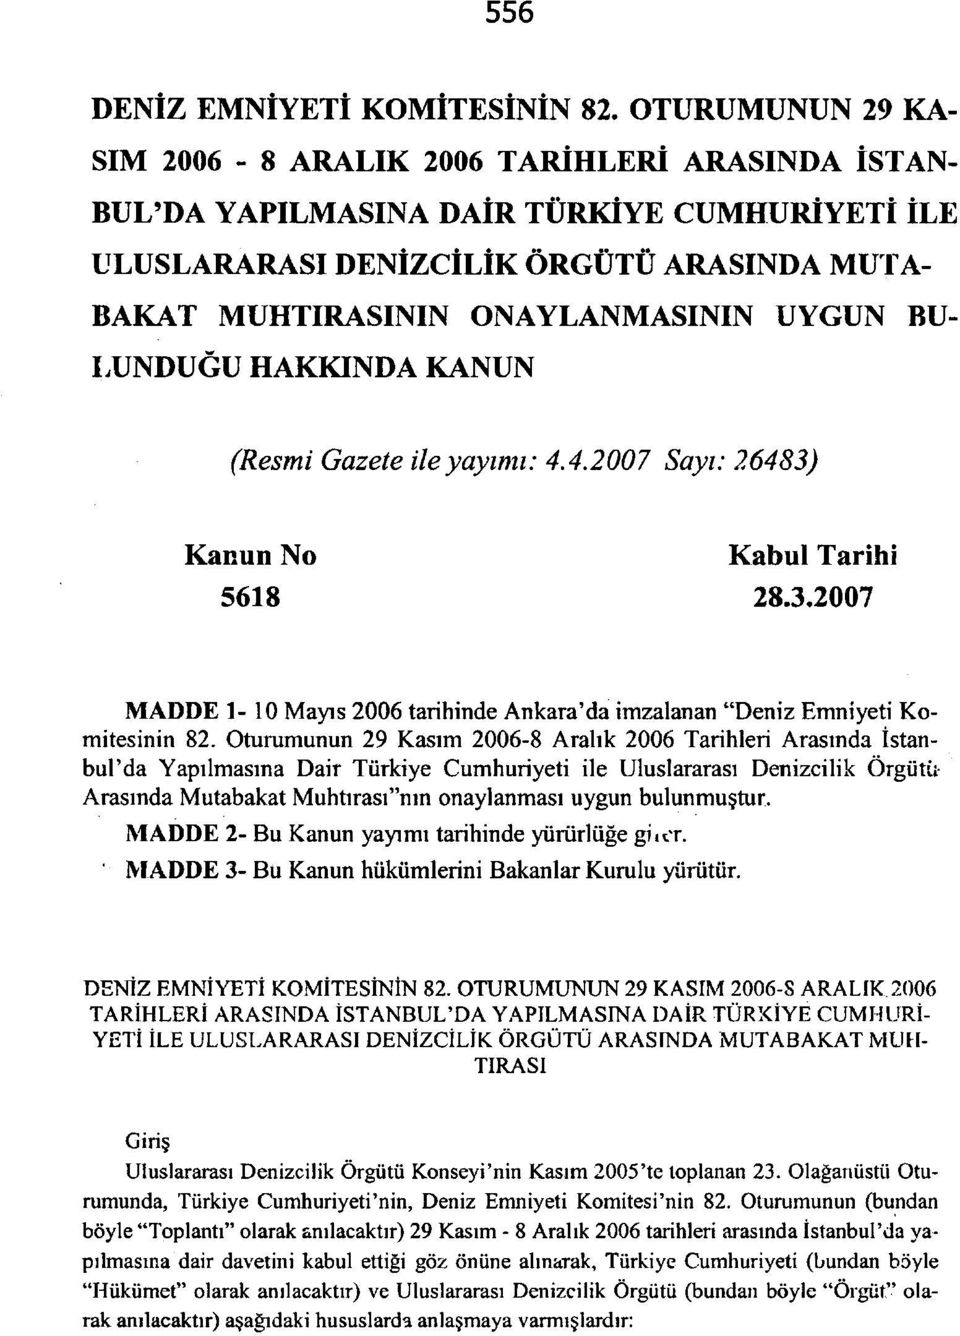 BU LUNDUĞU HAKKINDA KANUN (Resmi Gazete ile yayımı: 4.4.2007 Sayı: 26483) Kanun No Kabul Tarihi MADDE 1-10 Mayıs 2006 tarihinde Ankara'da imzalanan "Deniz Emniyeti Komitesinin 82.